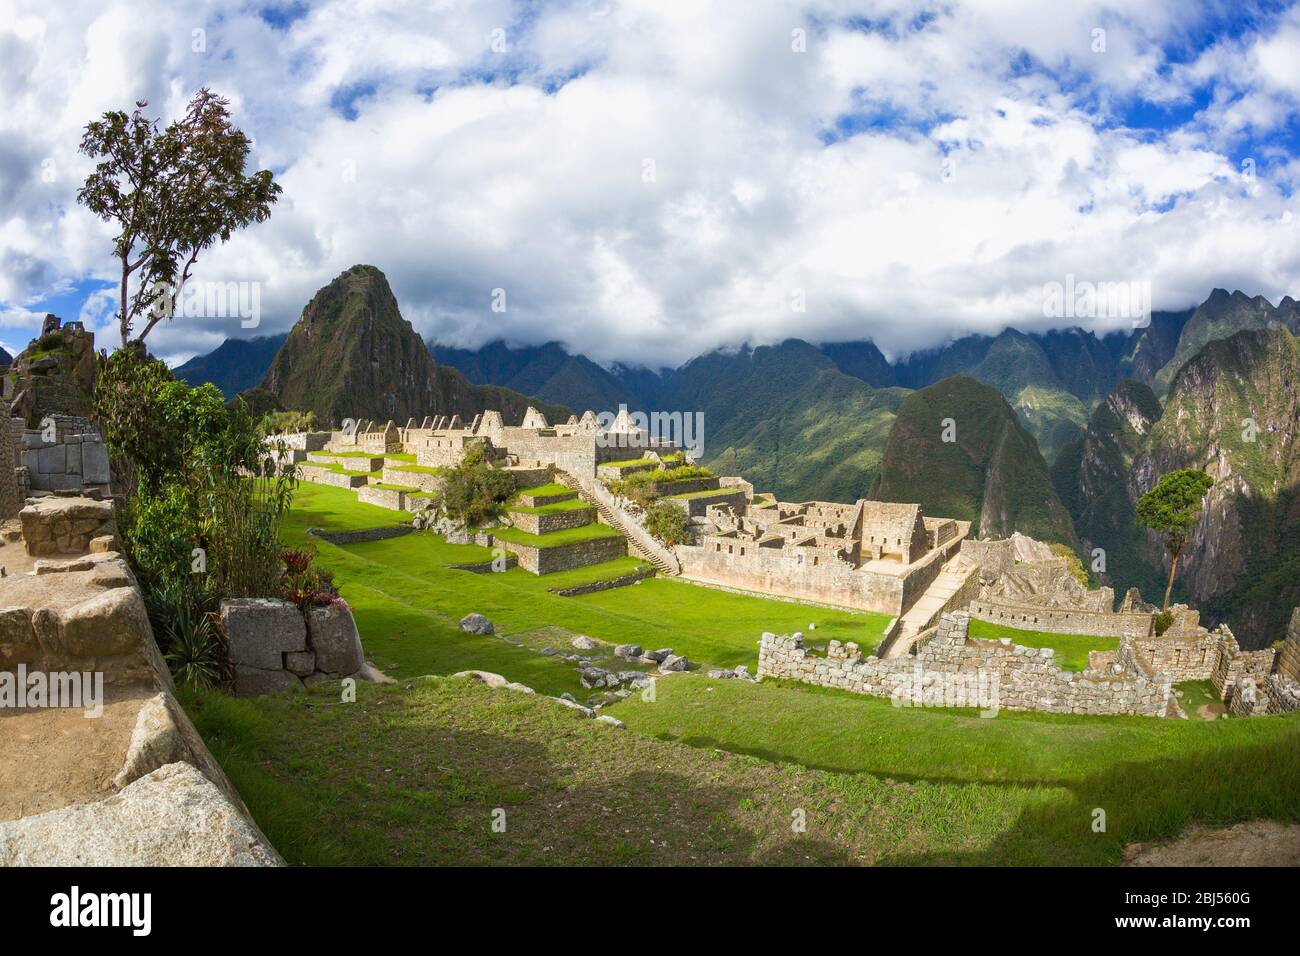 The citadel of Machu Picchu in Peru. Stock Photo